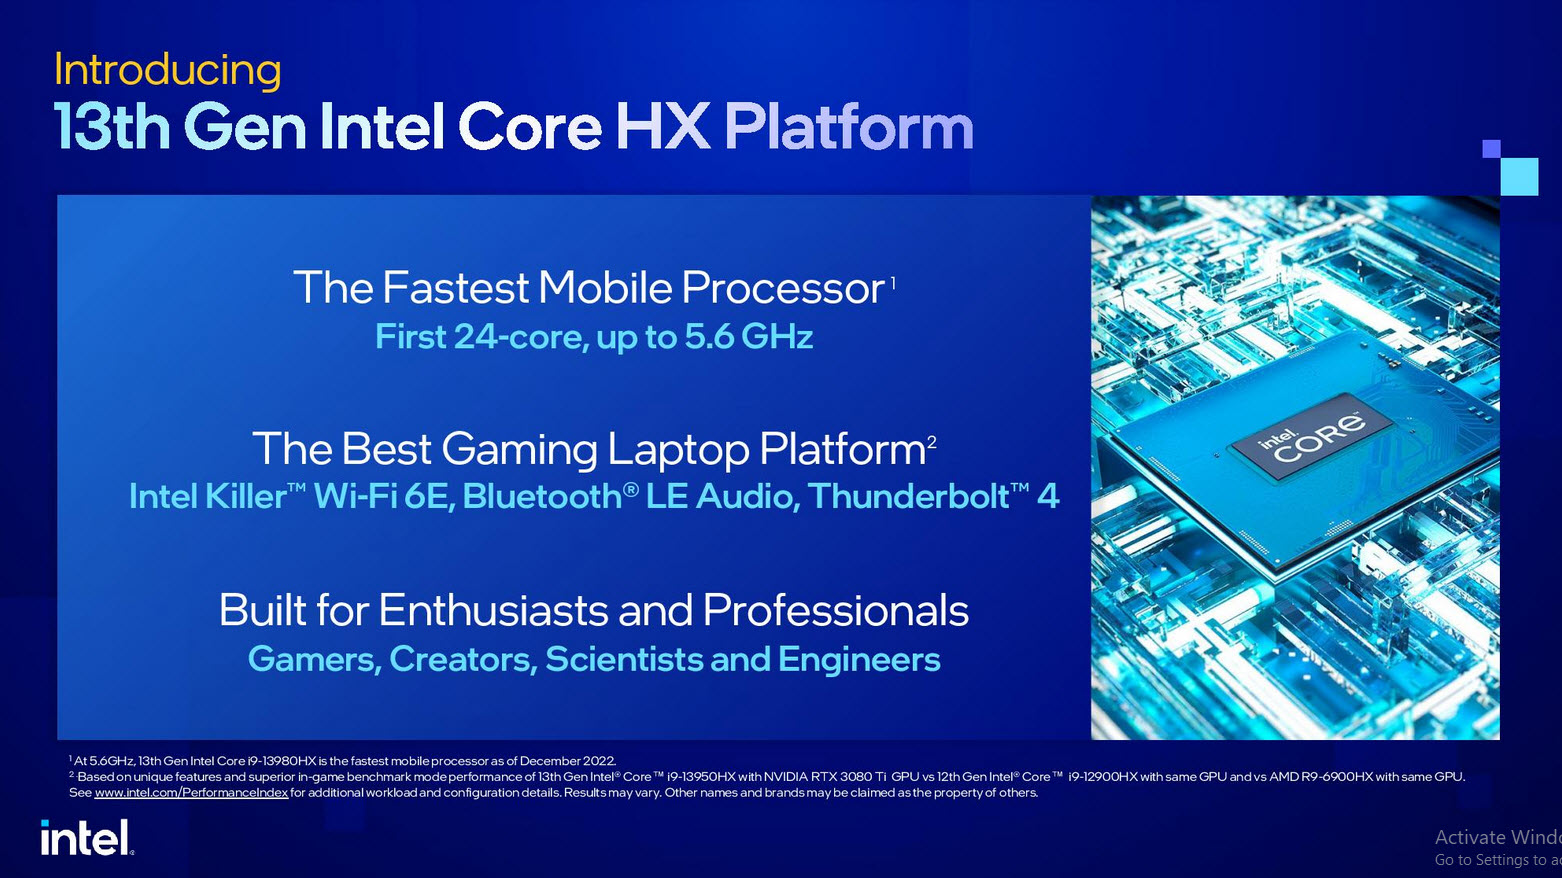 2023 01 05 11 06 17 อินเทลเปิดตัวซีพียู Intel 13th Gen ในรุ่น Mobile ใช้งานในแล็ปท็อปรหัส HX/H/P/U series รุ่นใหม่ล่าสุดมากถึง 23รุ่น รุ่นท็อป Core i9 13980HX 24C/32T ความเร็ว 5.6Ghz 